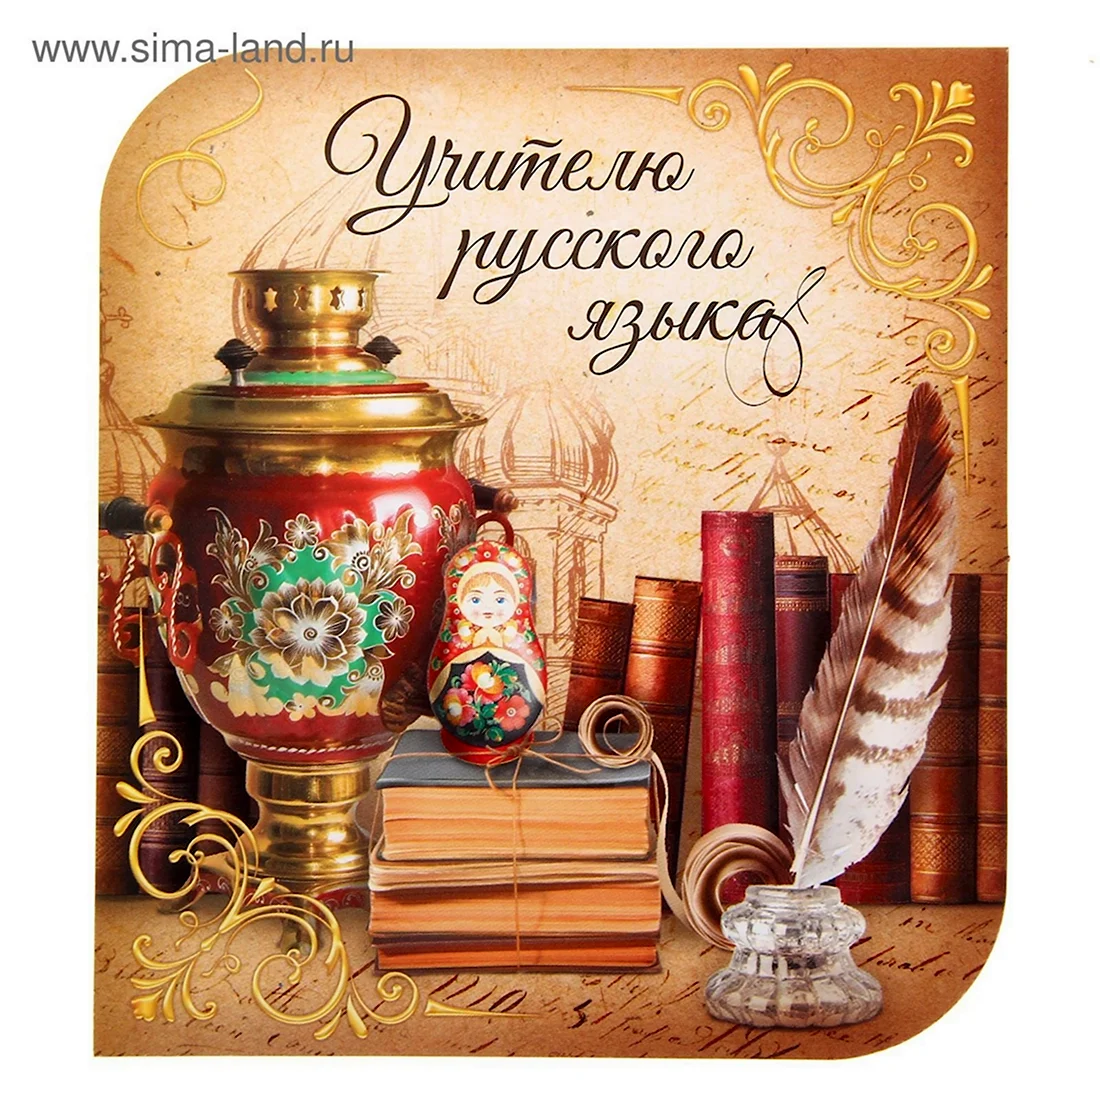 Открытка учителю русского языка и литературы. Поздравление на праздник